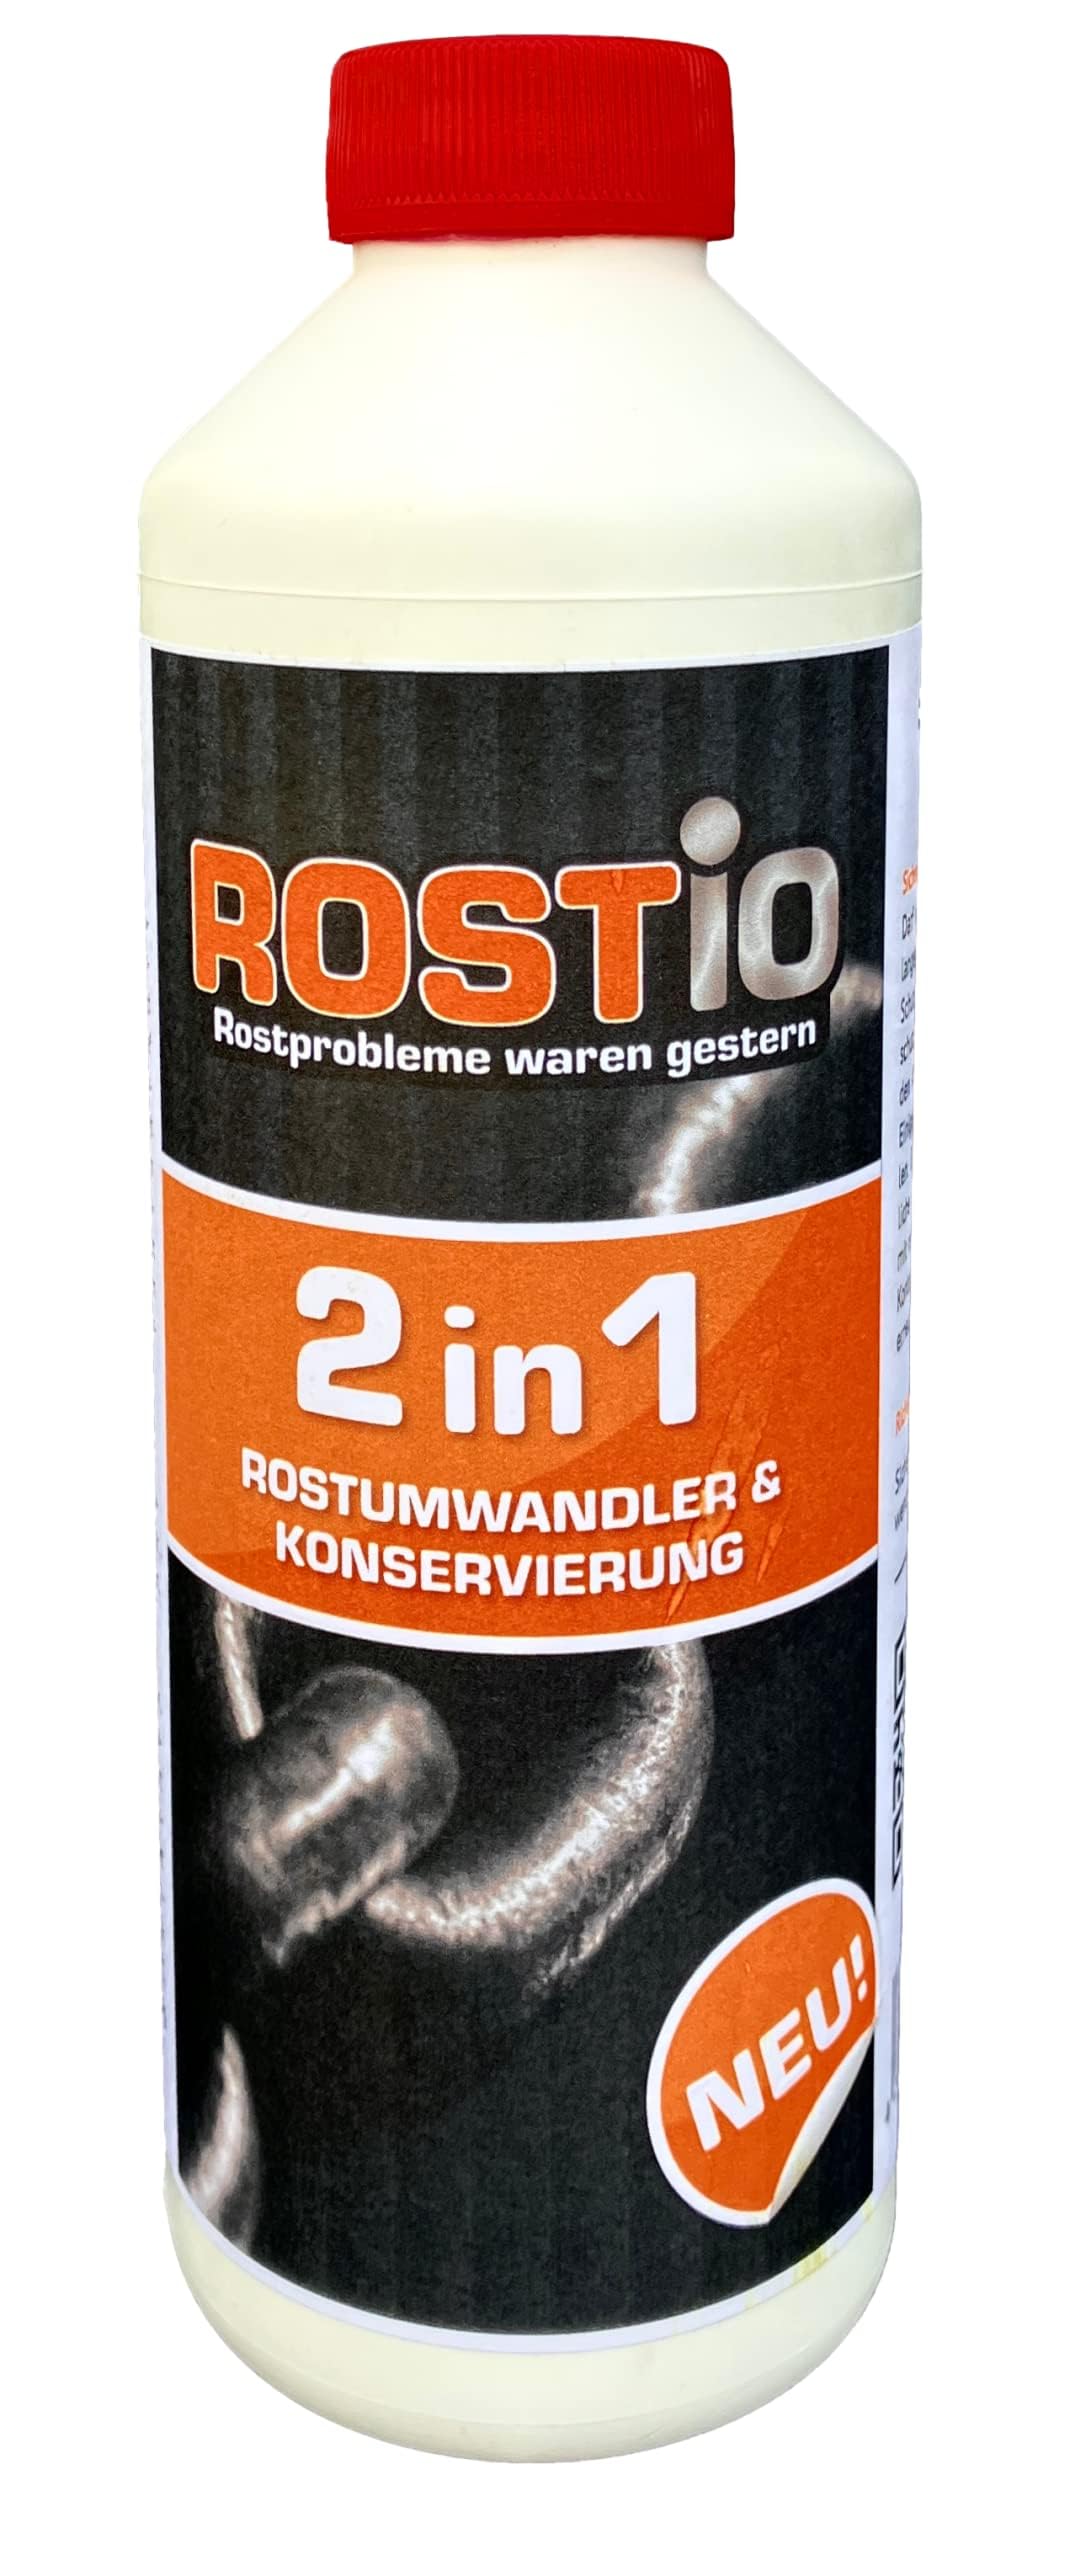 Rostio 2 in 1 Rostumwandler & Konservierung | Hohlraum-Wachs | Rostschutz | Korrosionsschutz | Hohlraumkonservierung | Hohlraumversiegelung von Rostio